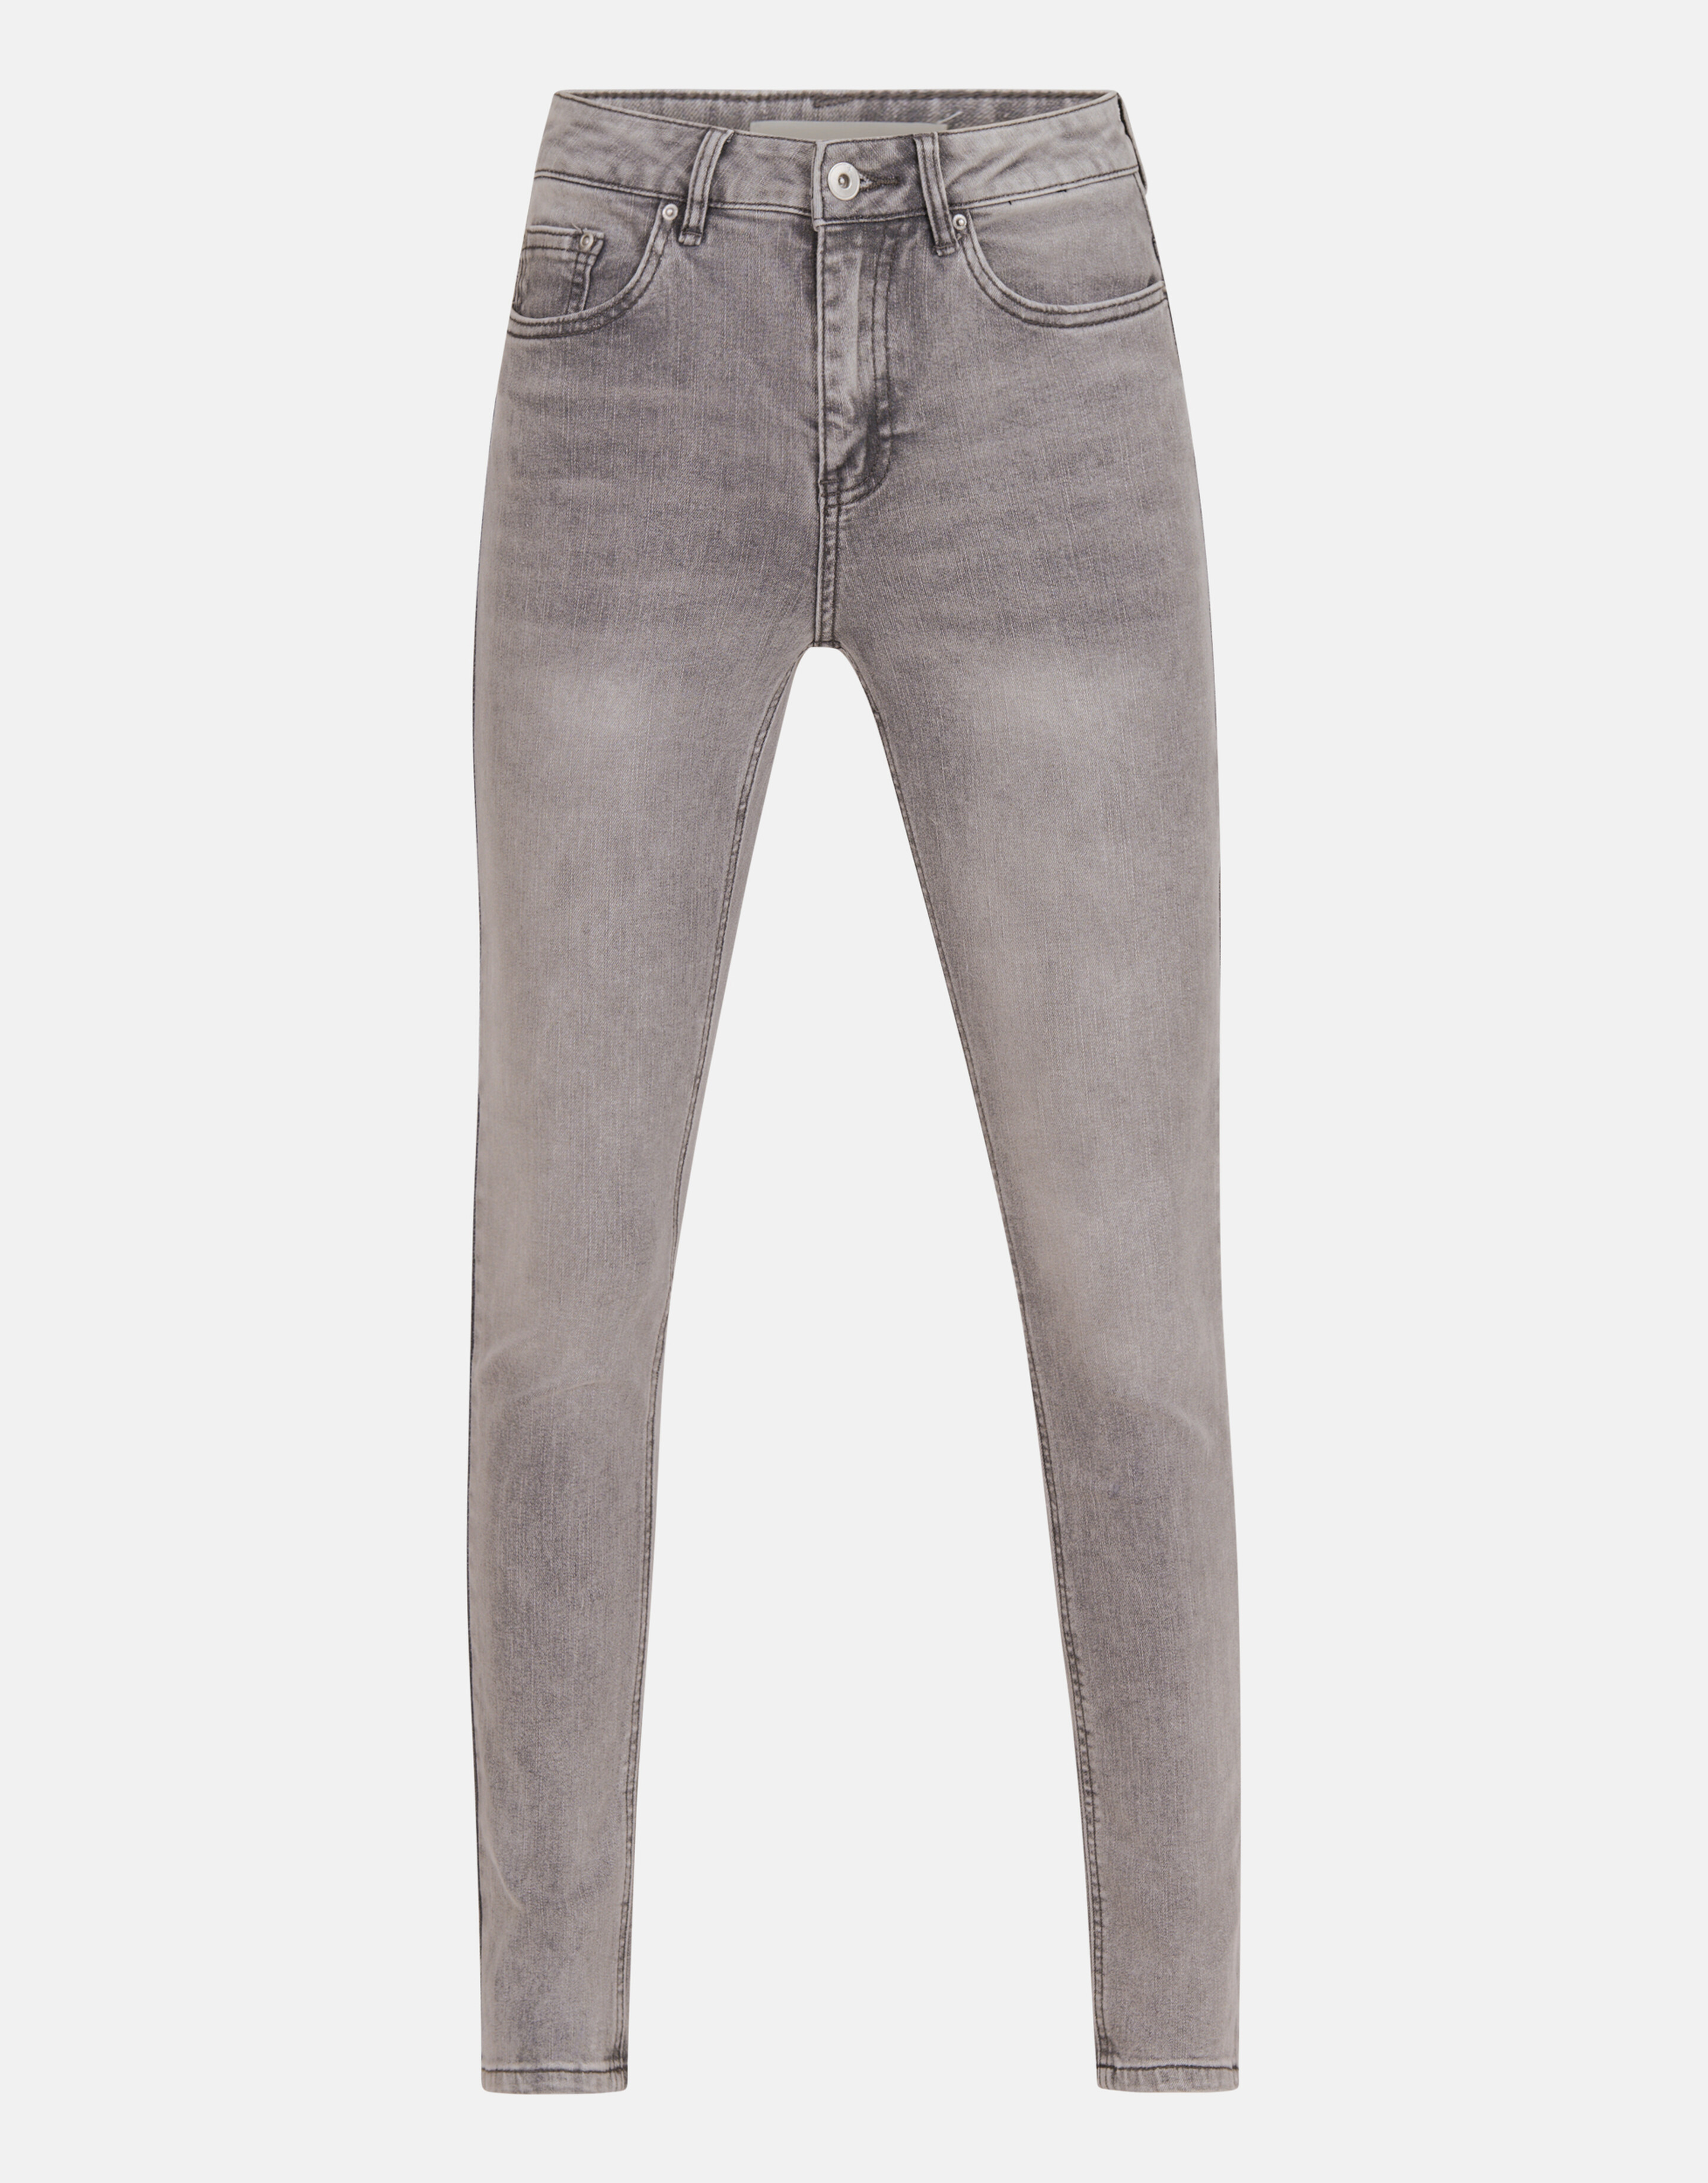 Skinny Jeans Grijs L30 SHOEBY WOMEN